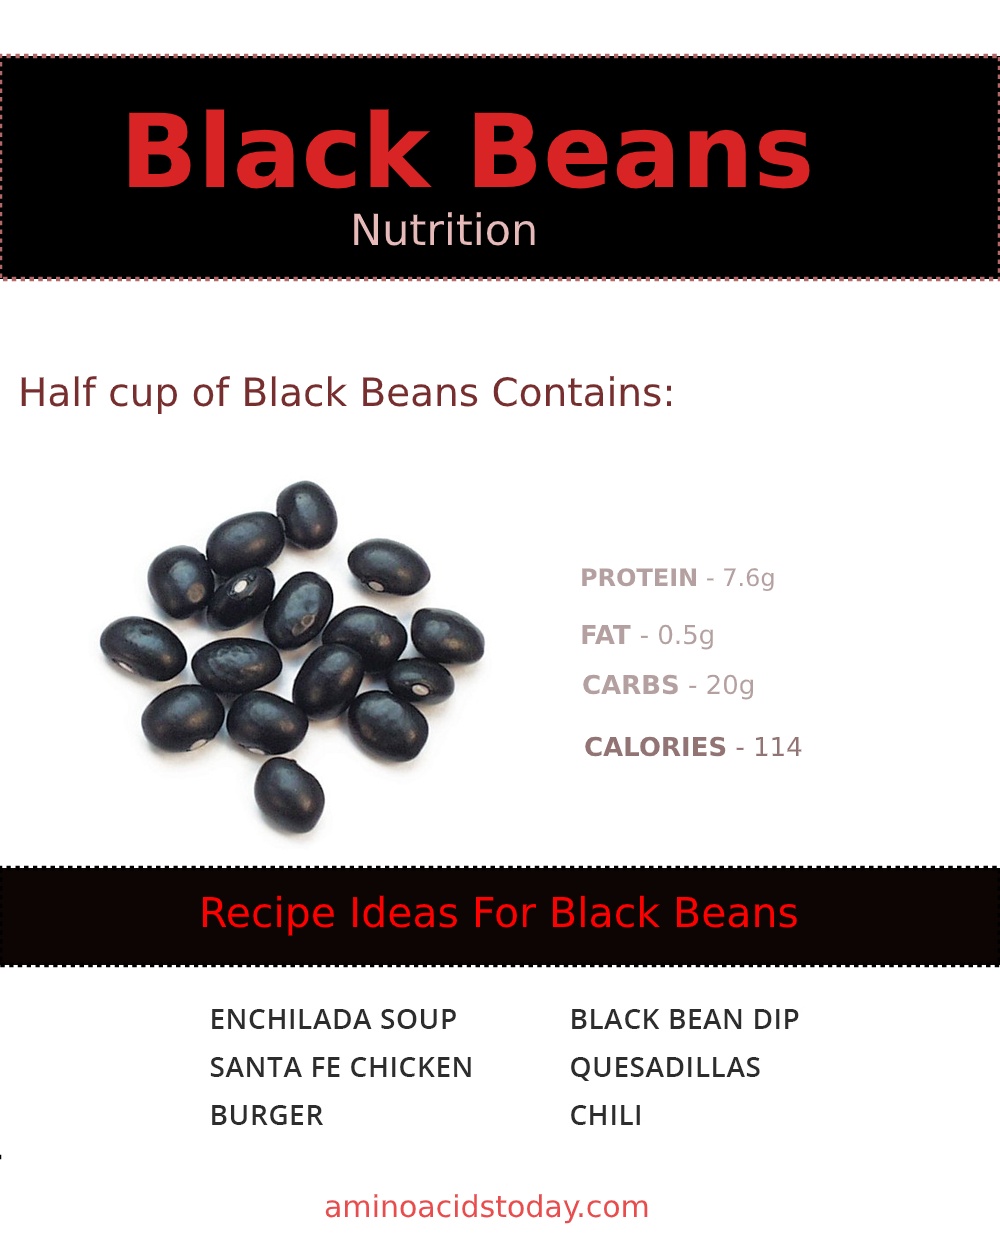 Black beans nutrition